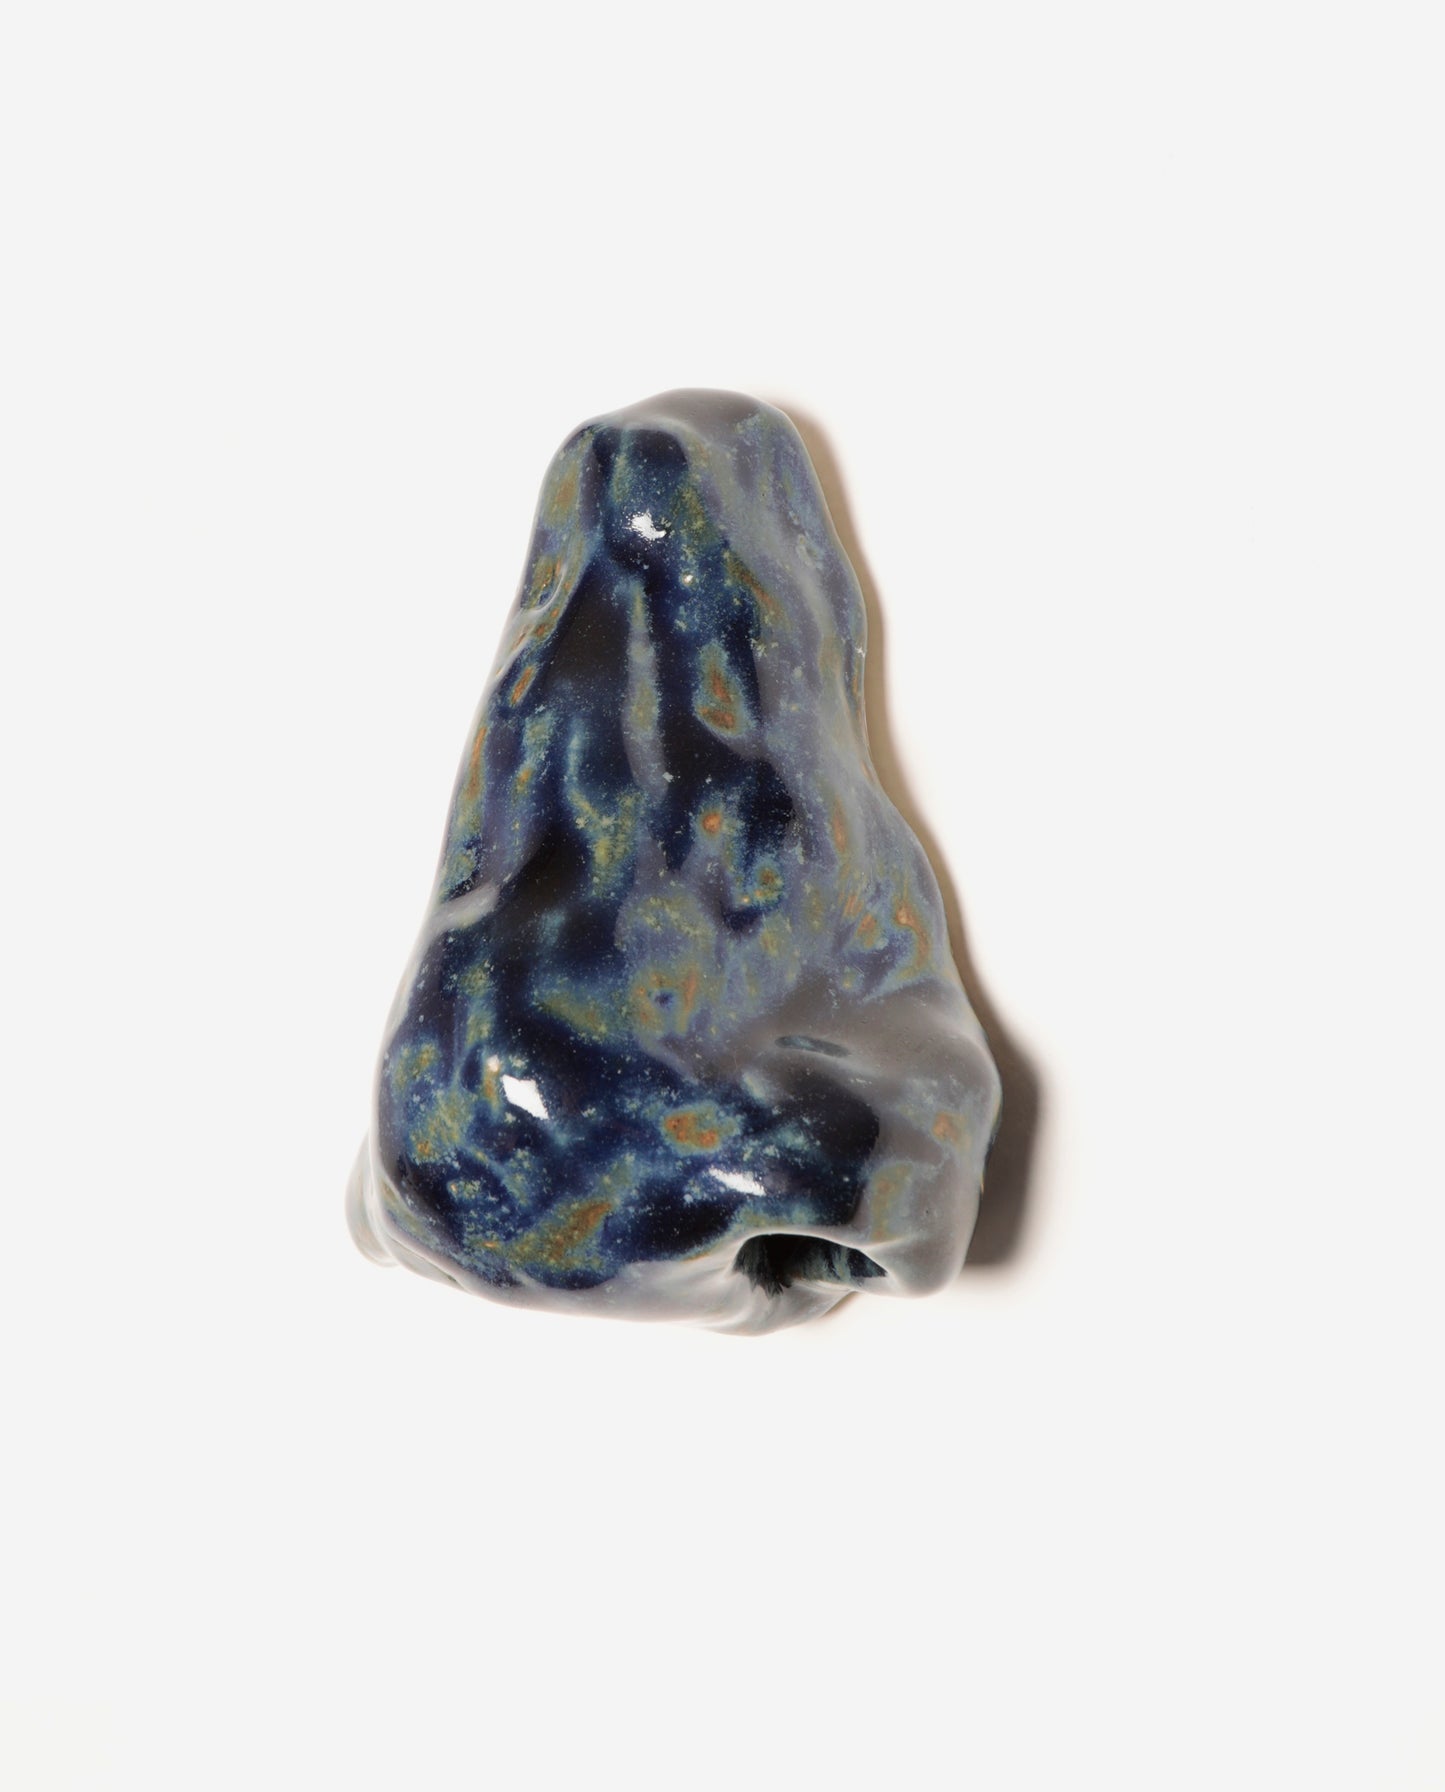 Nez en céramique émaillé bleu, avec de petites tâches brunes orangées.